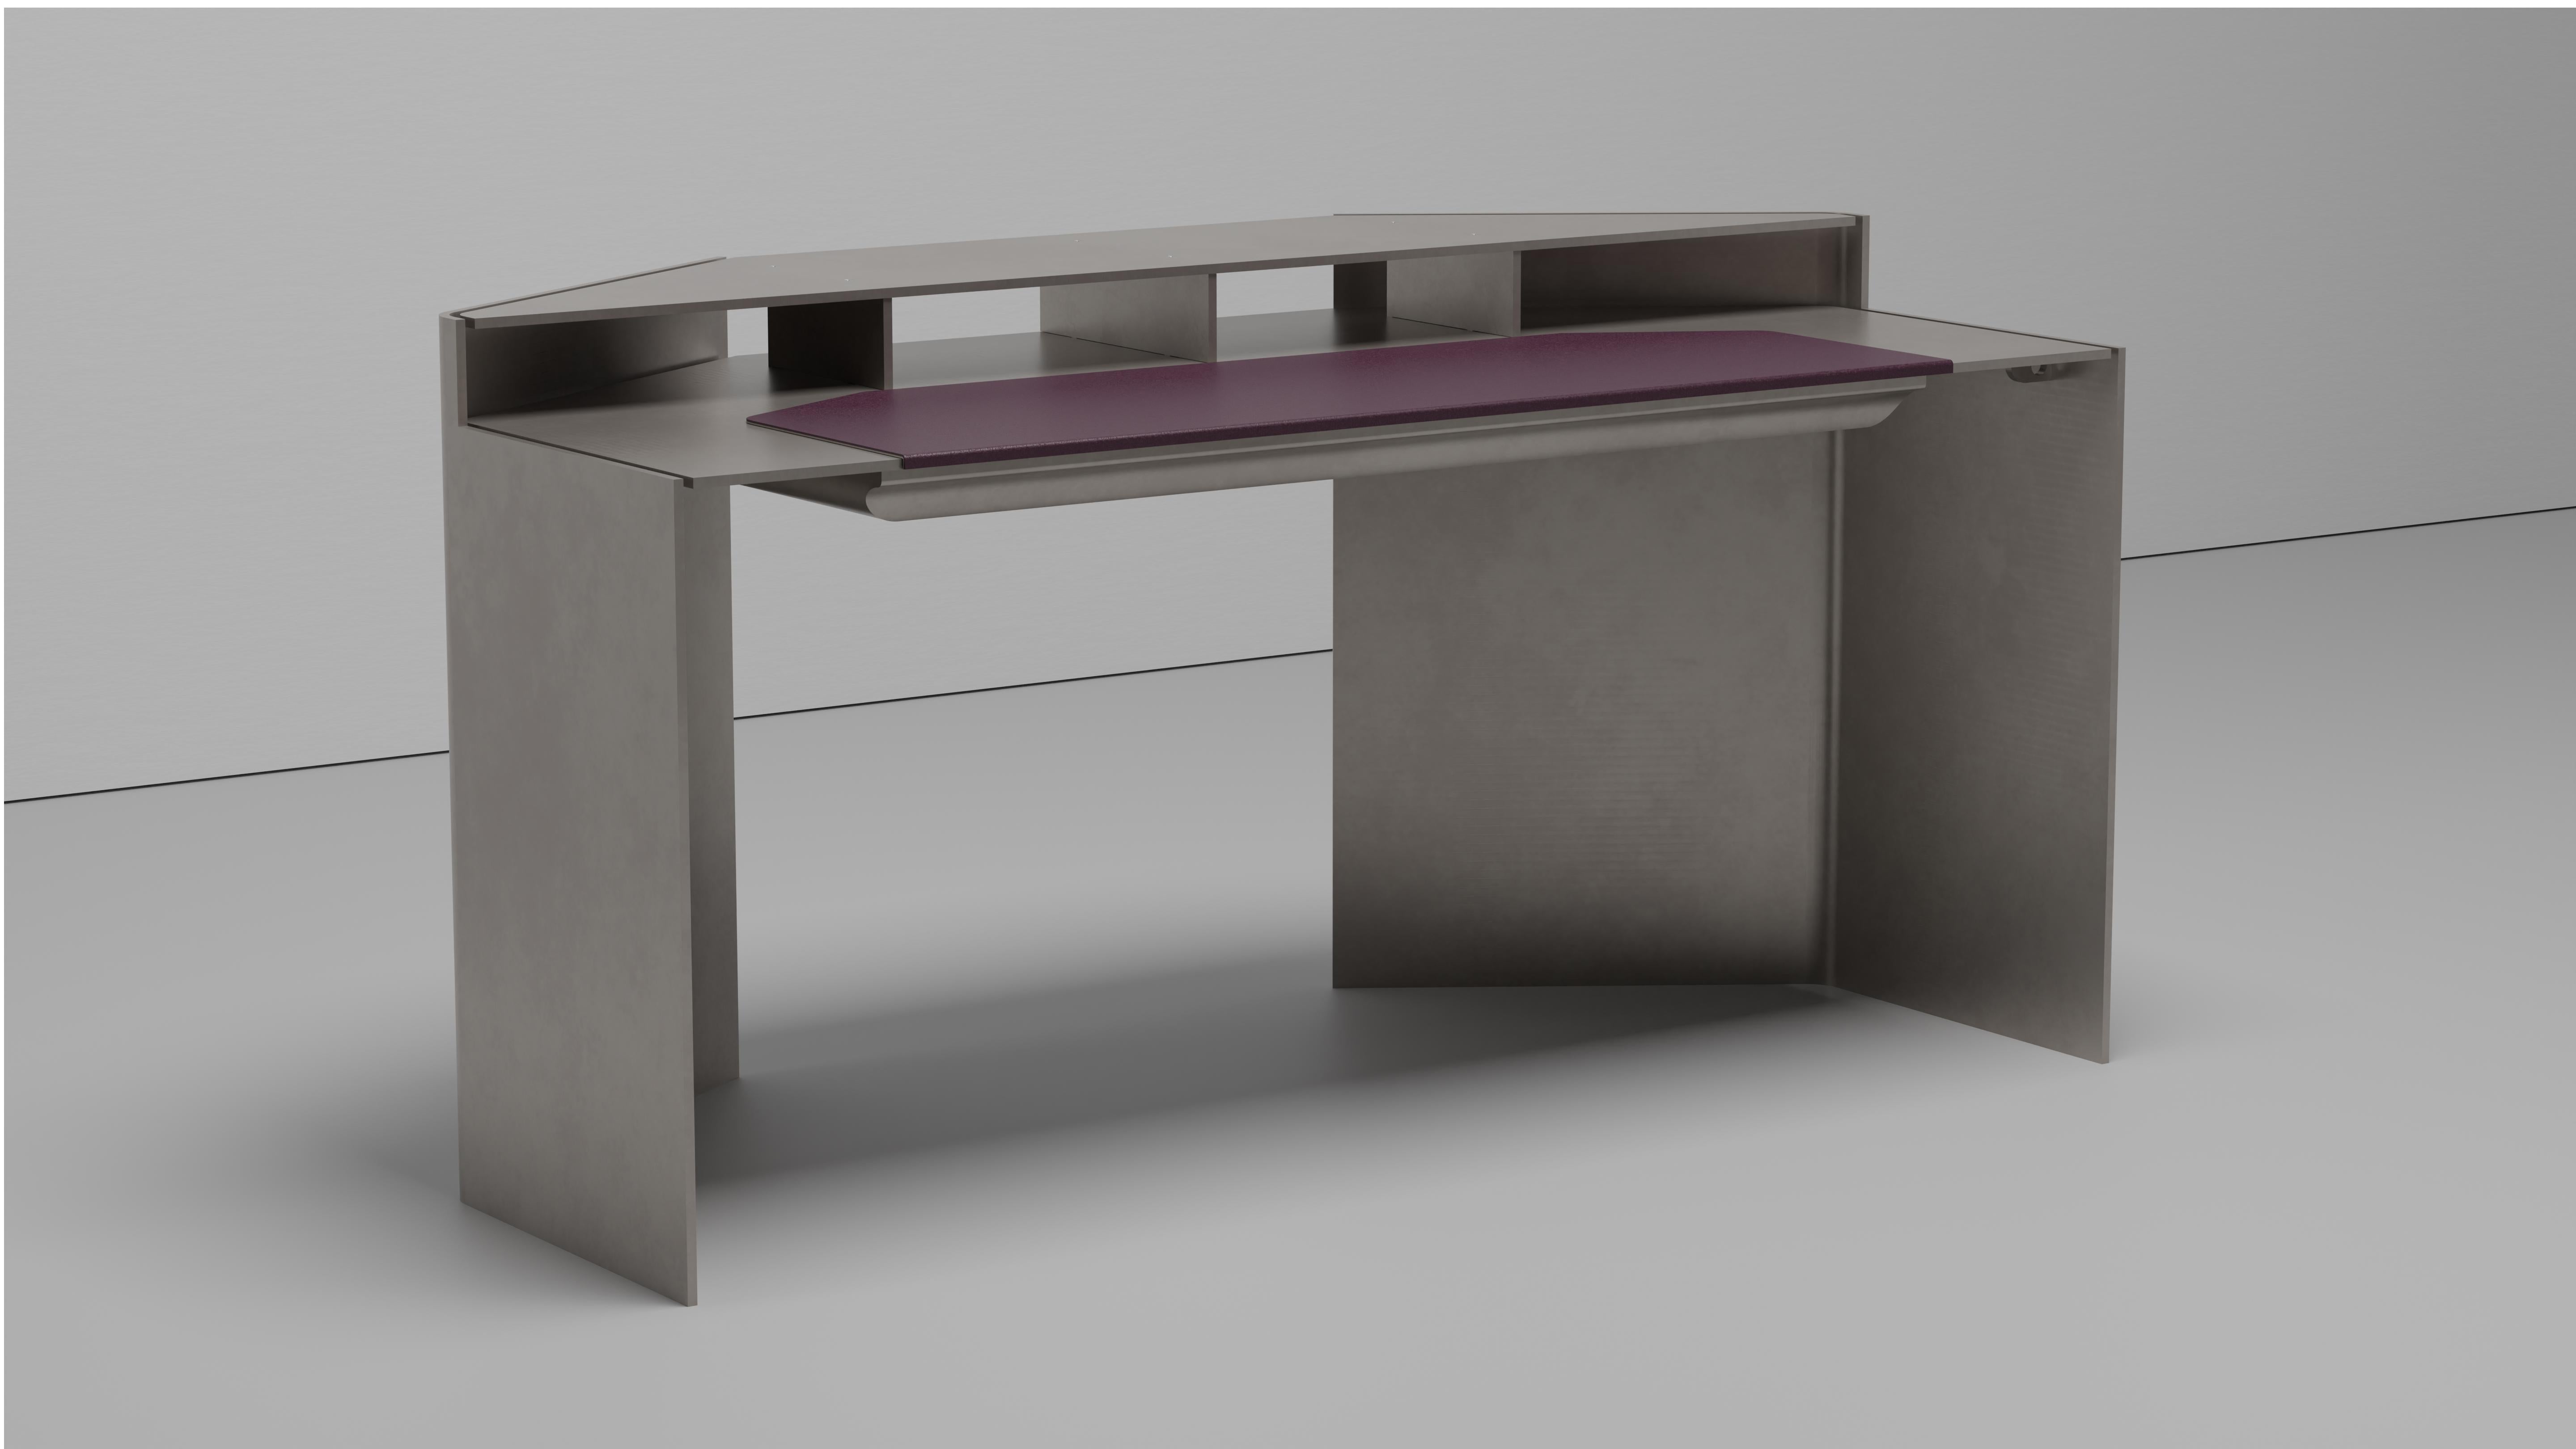 Next General Schreibtisch aus drei acht Zoll dickem gewachstem Aluminium. Das gestufte Oberteil hat sowohl hinten als auch unten Kordelabsätze. Variationen, Leder- und Puderfarben sind auf Anfrage erhältlich. Die Schreibfläche des Schreibtisches hat